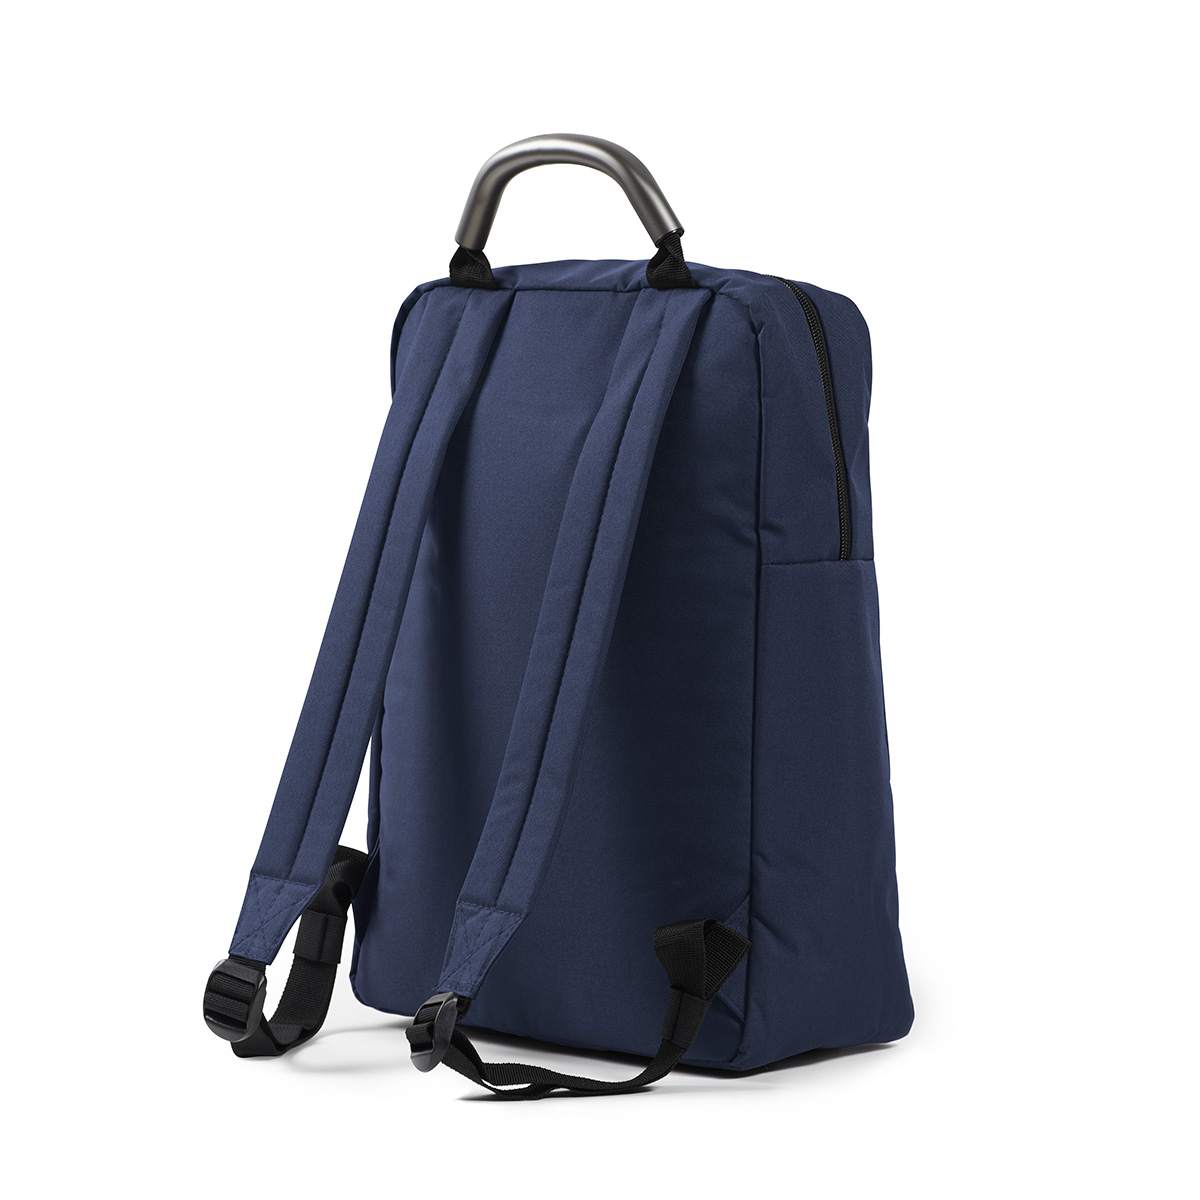 Lexon LN2704N 14 in. Premium Plus Slim Backpack, Black 